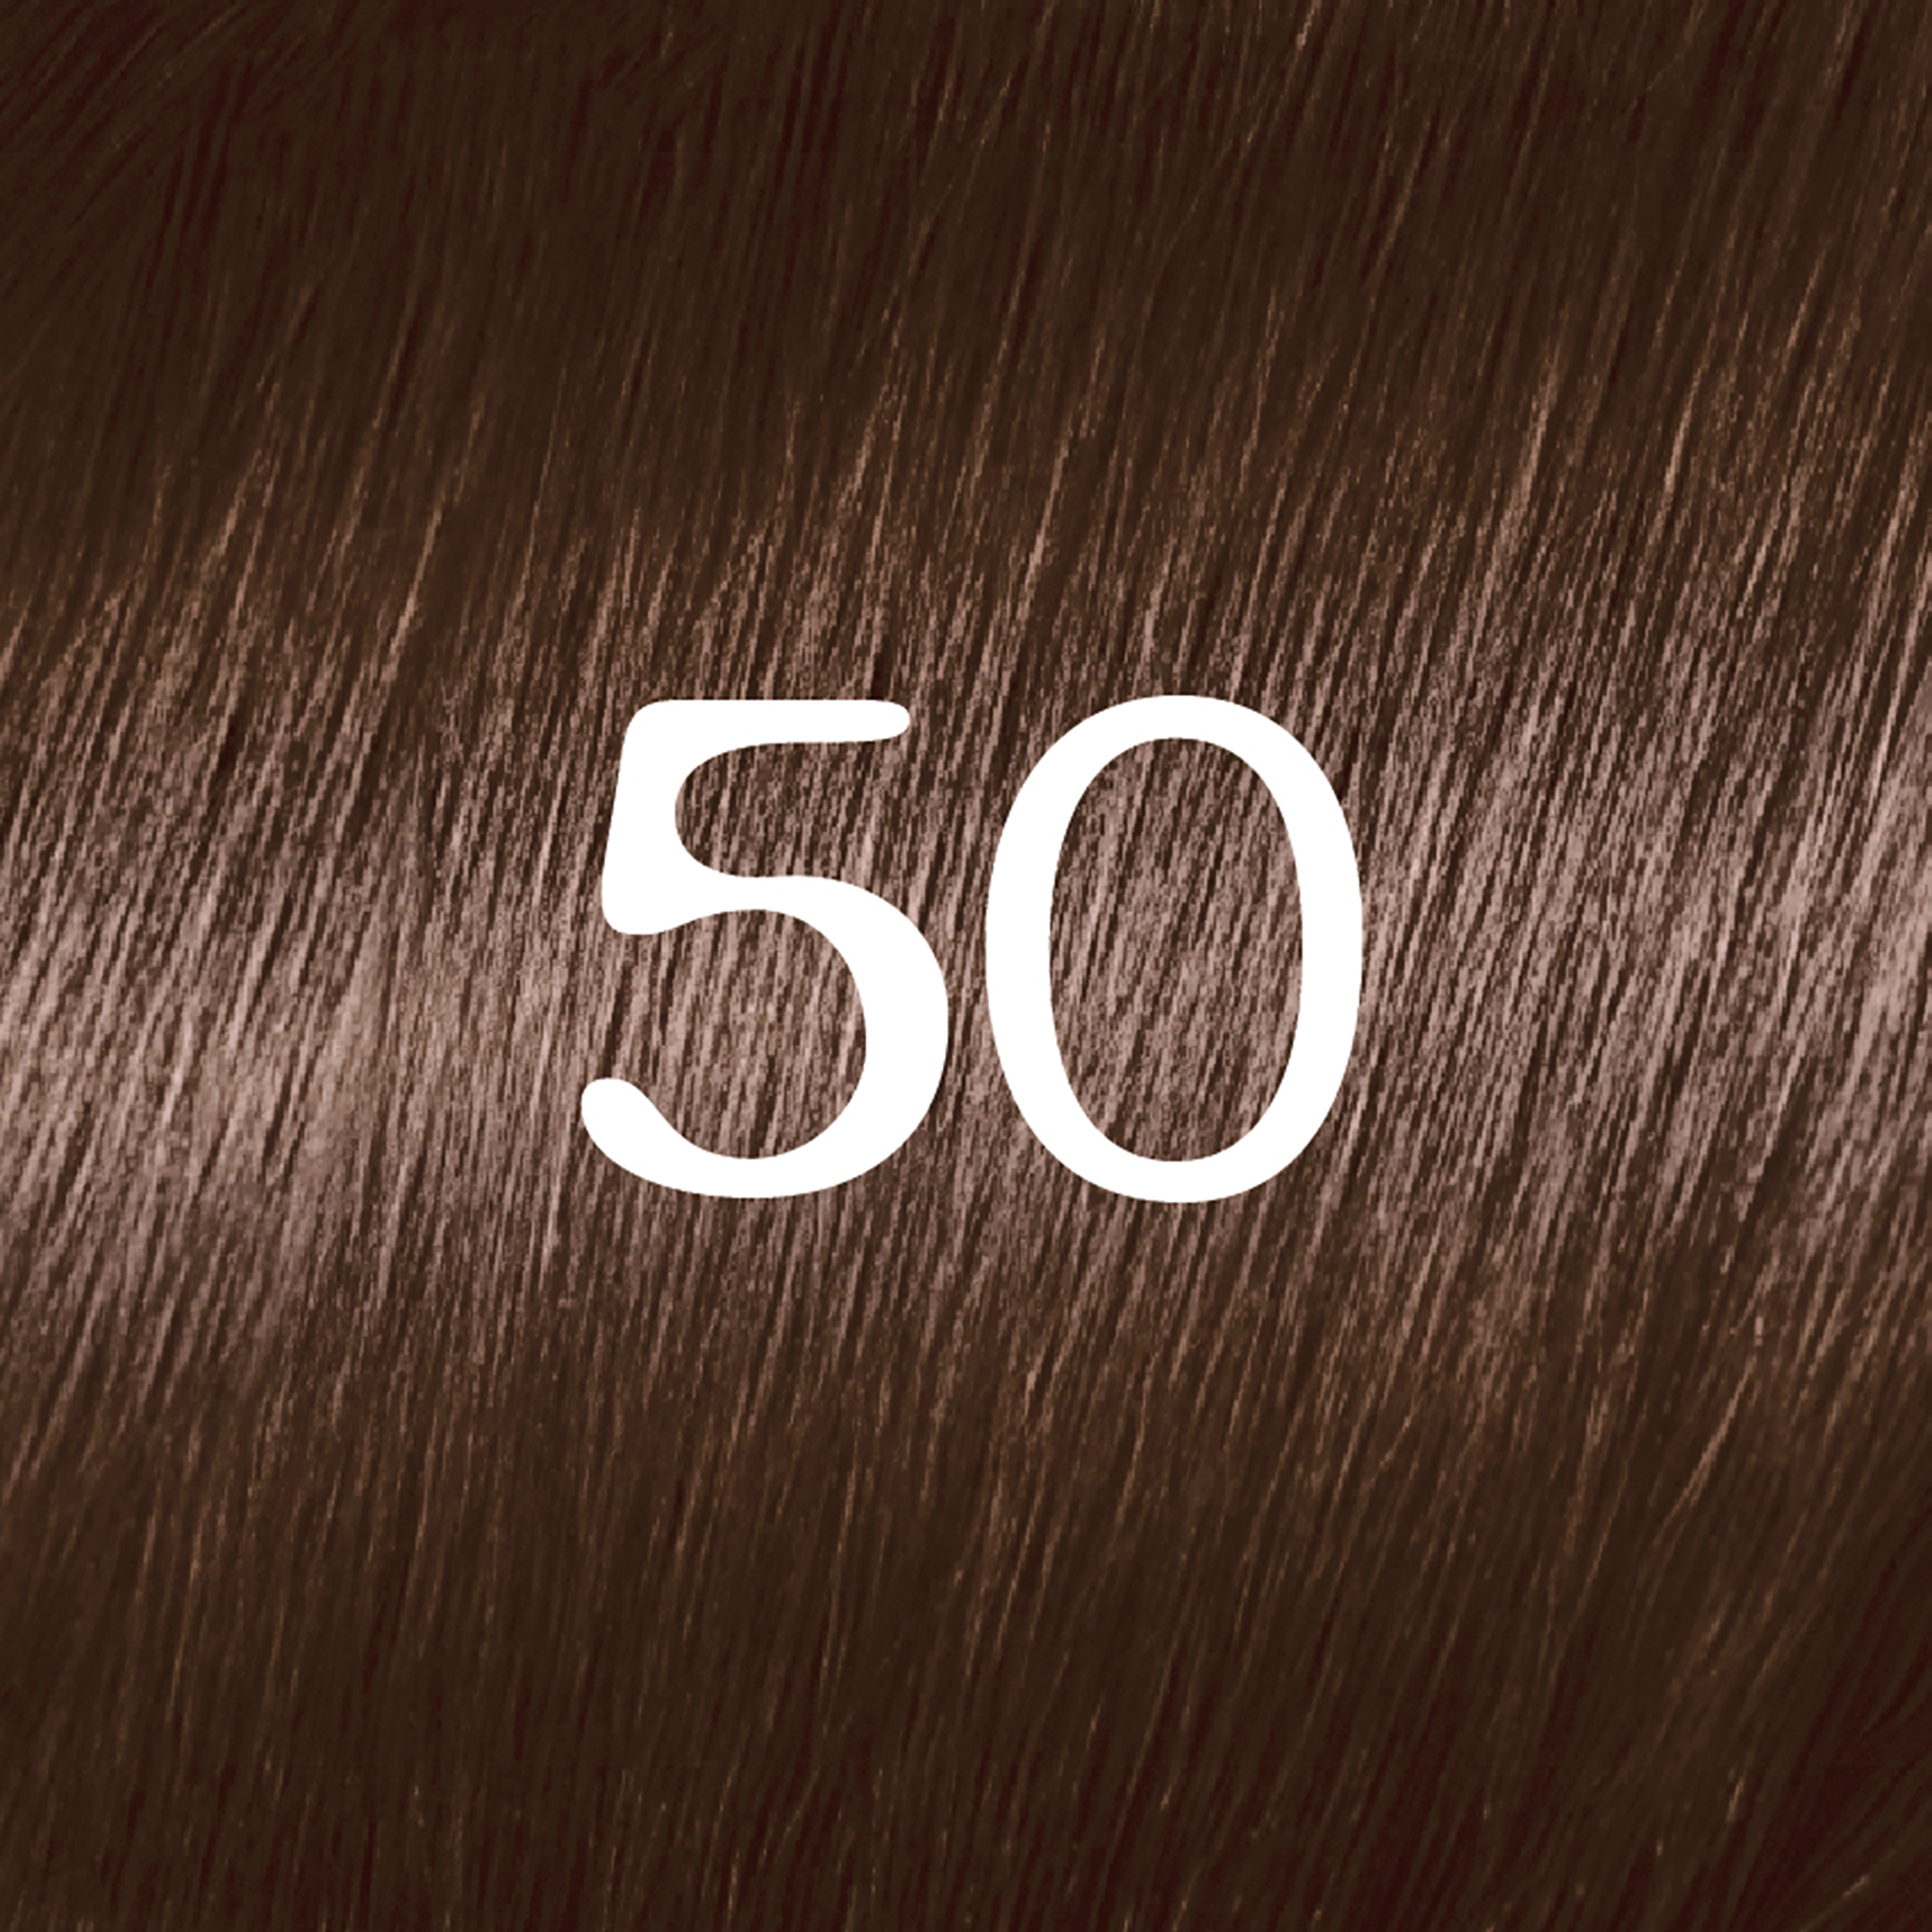 L'Oreal Paris Feria Permanent Hair Color, 50 Havana Brown Medium Brown - image 2 of 8